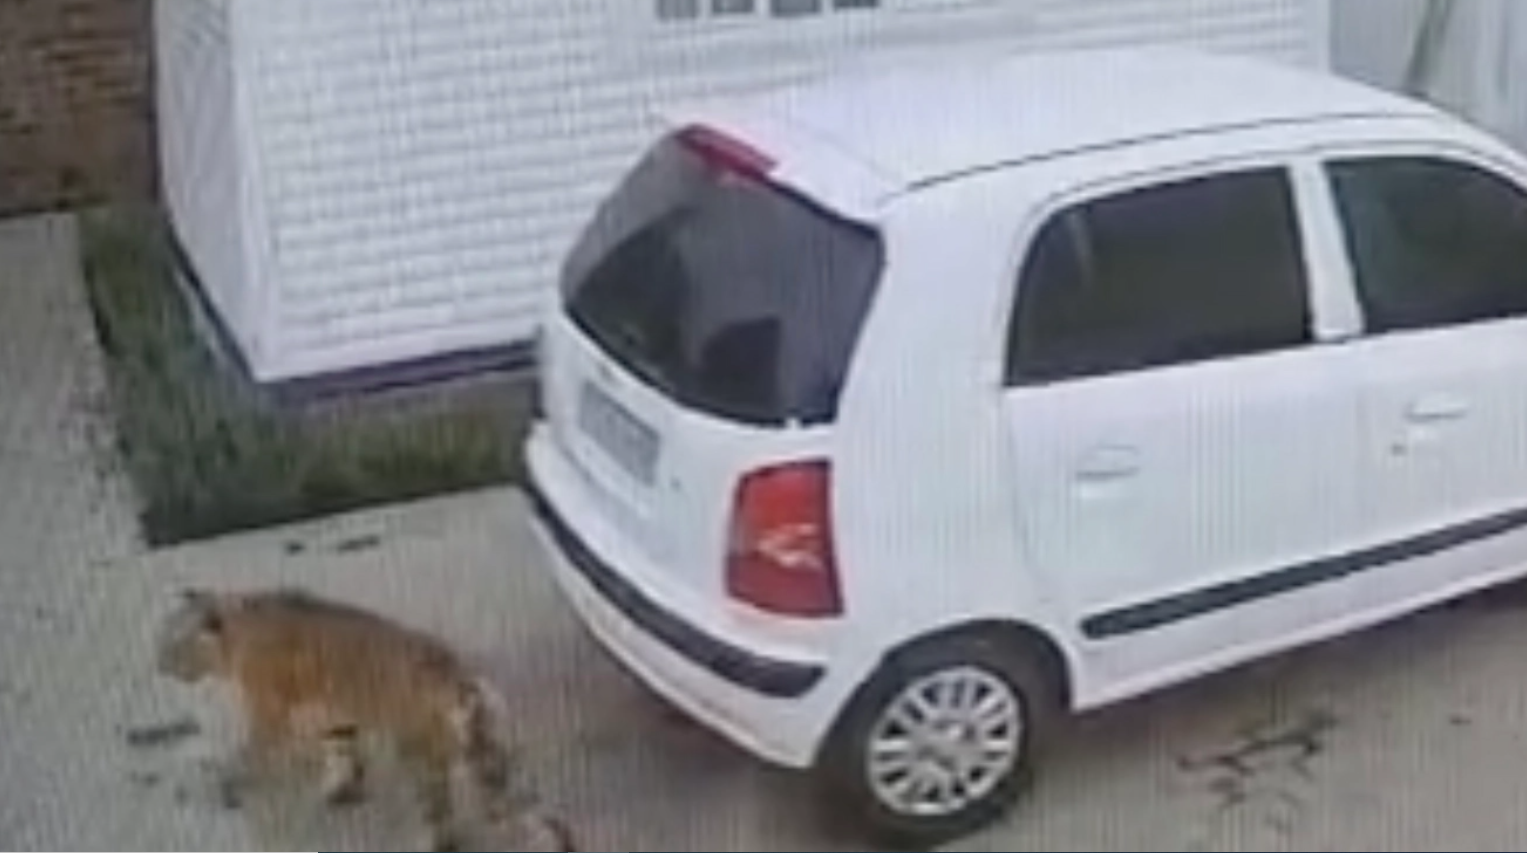 Foto. Le immagini sgranate di una telecamera a circuito chiuso mostrano una tigre, in basso a sinistra, che cammina in un parcheggio di fianco a un'auto bianca.